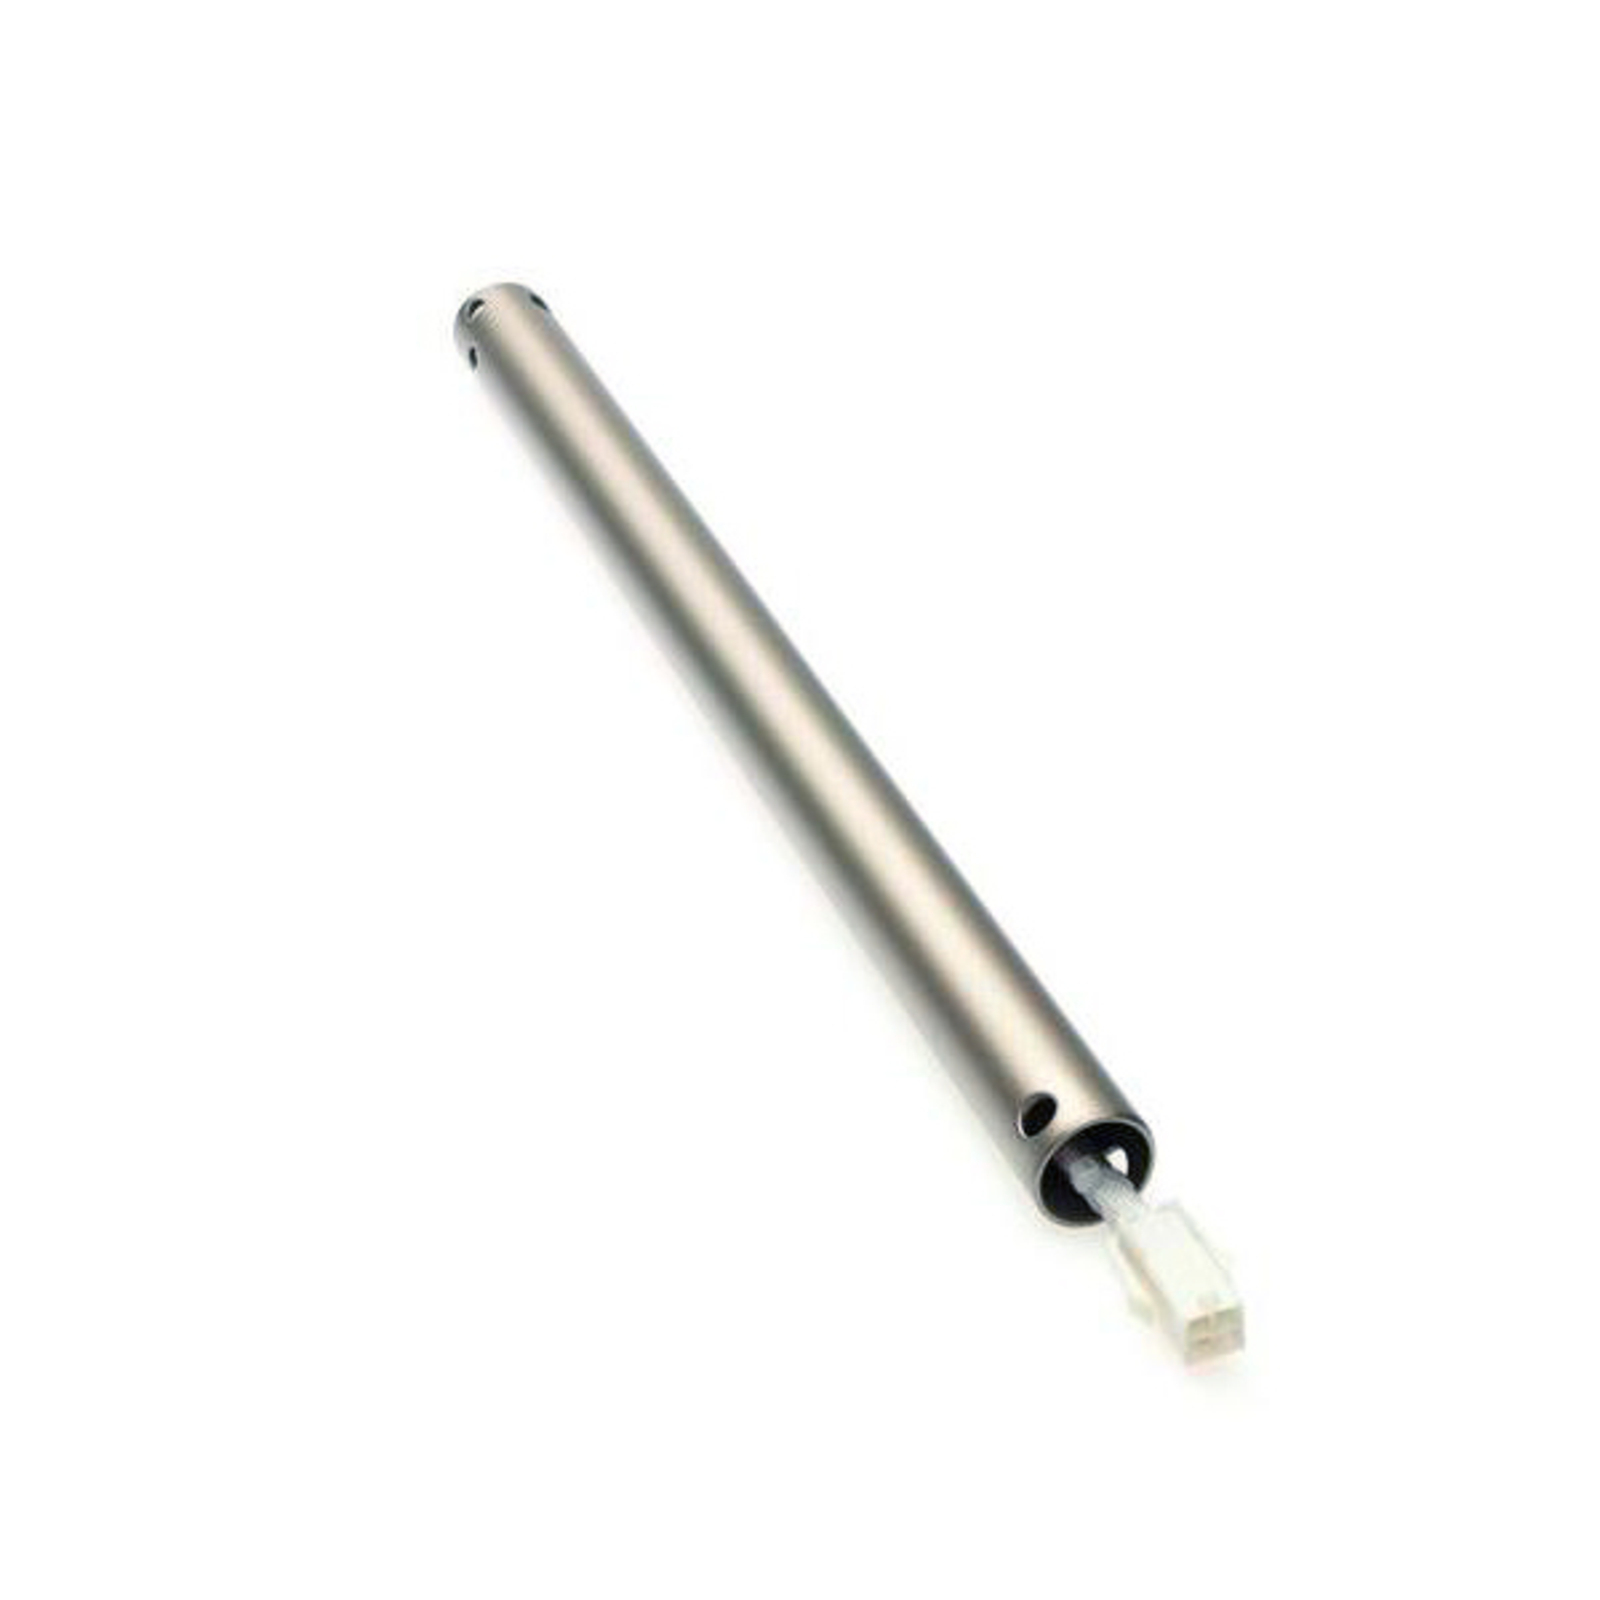 30.5 cm extension rod in titanium